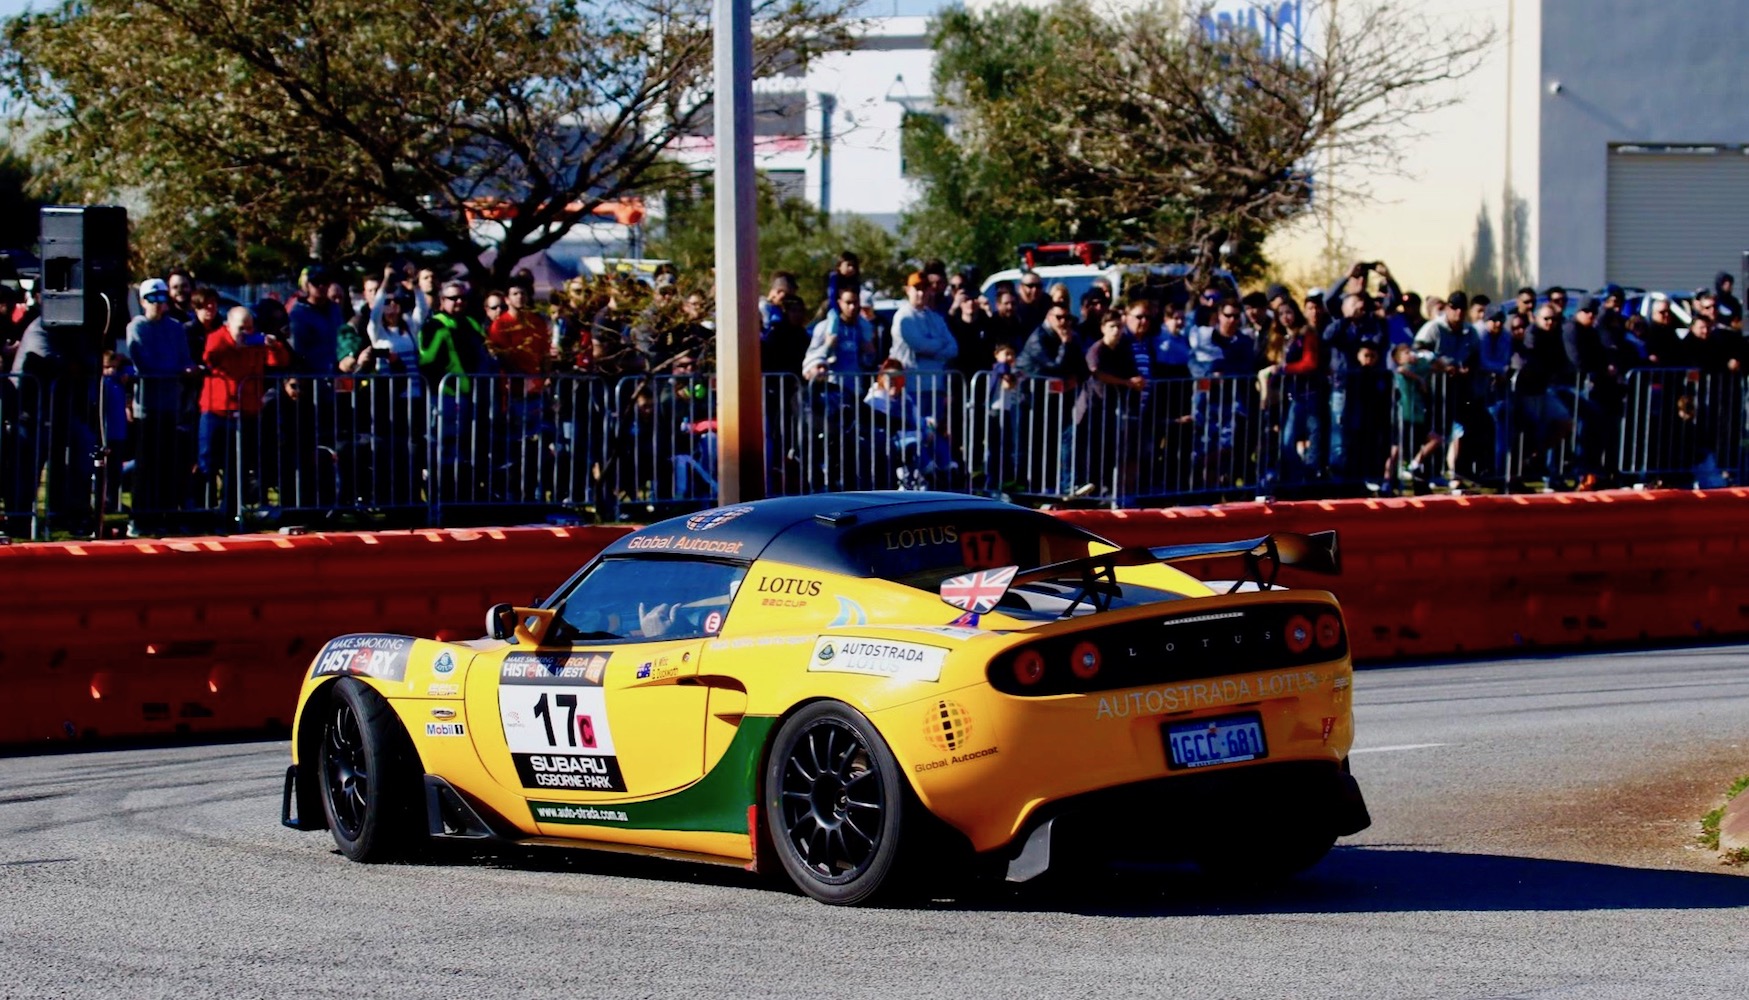 Autostrada Lotus Racing